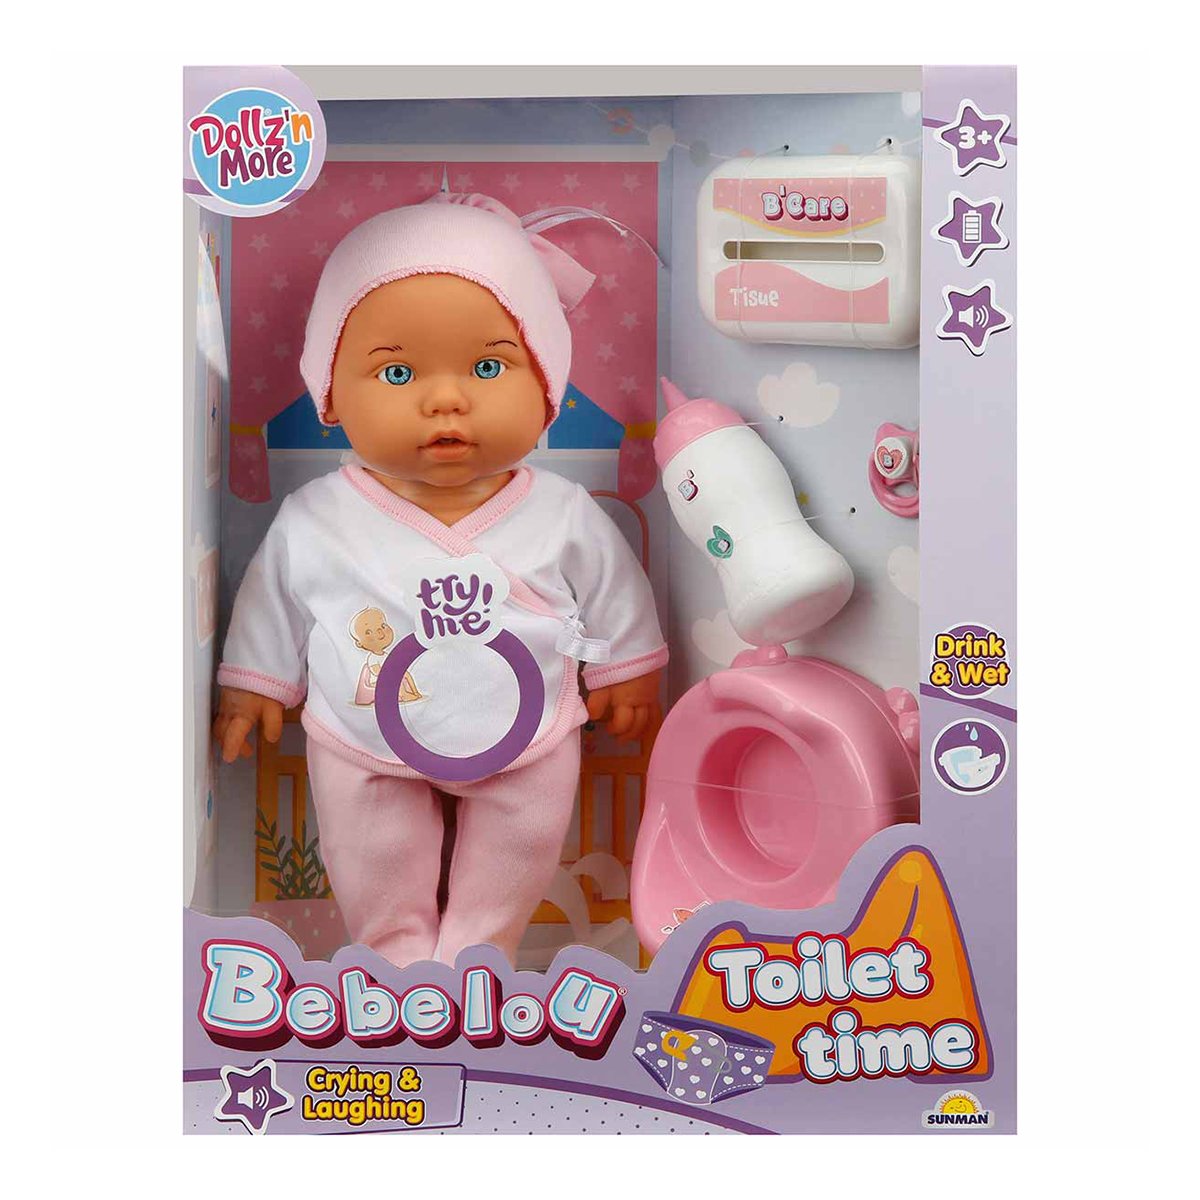 Papusa bebelus Bebelou, Dollz n More, Toilet Time, 35 cm, roz Bebelou imagine 2022 protejamcopilaria.ro